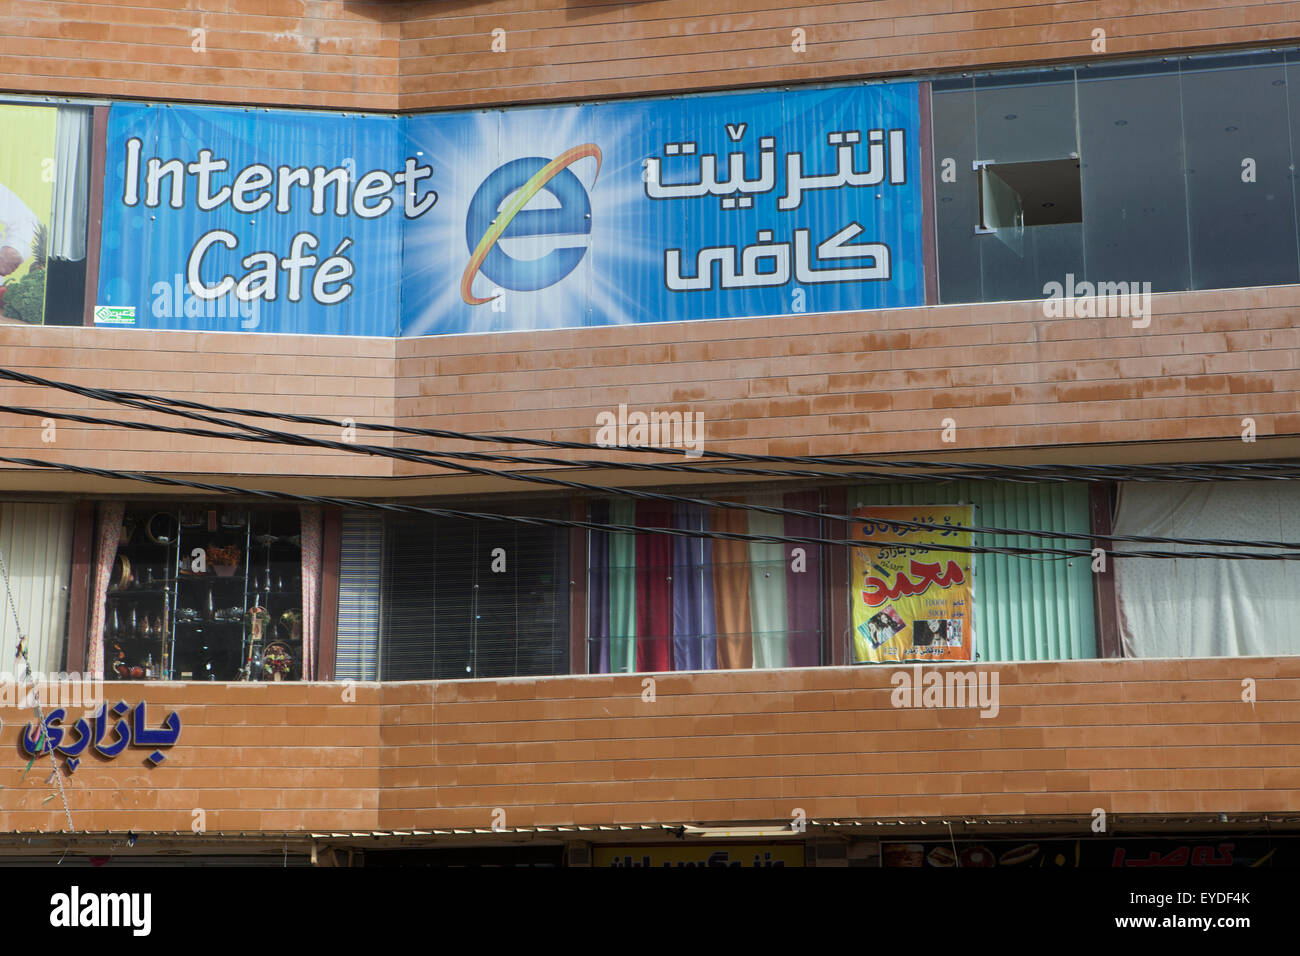 Vue sur Internet Café surla Street à Souleimaniyeh, Kurdistan irakien, l'Irak Banque D'Images